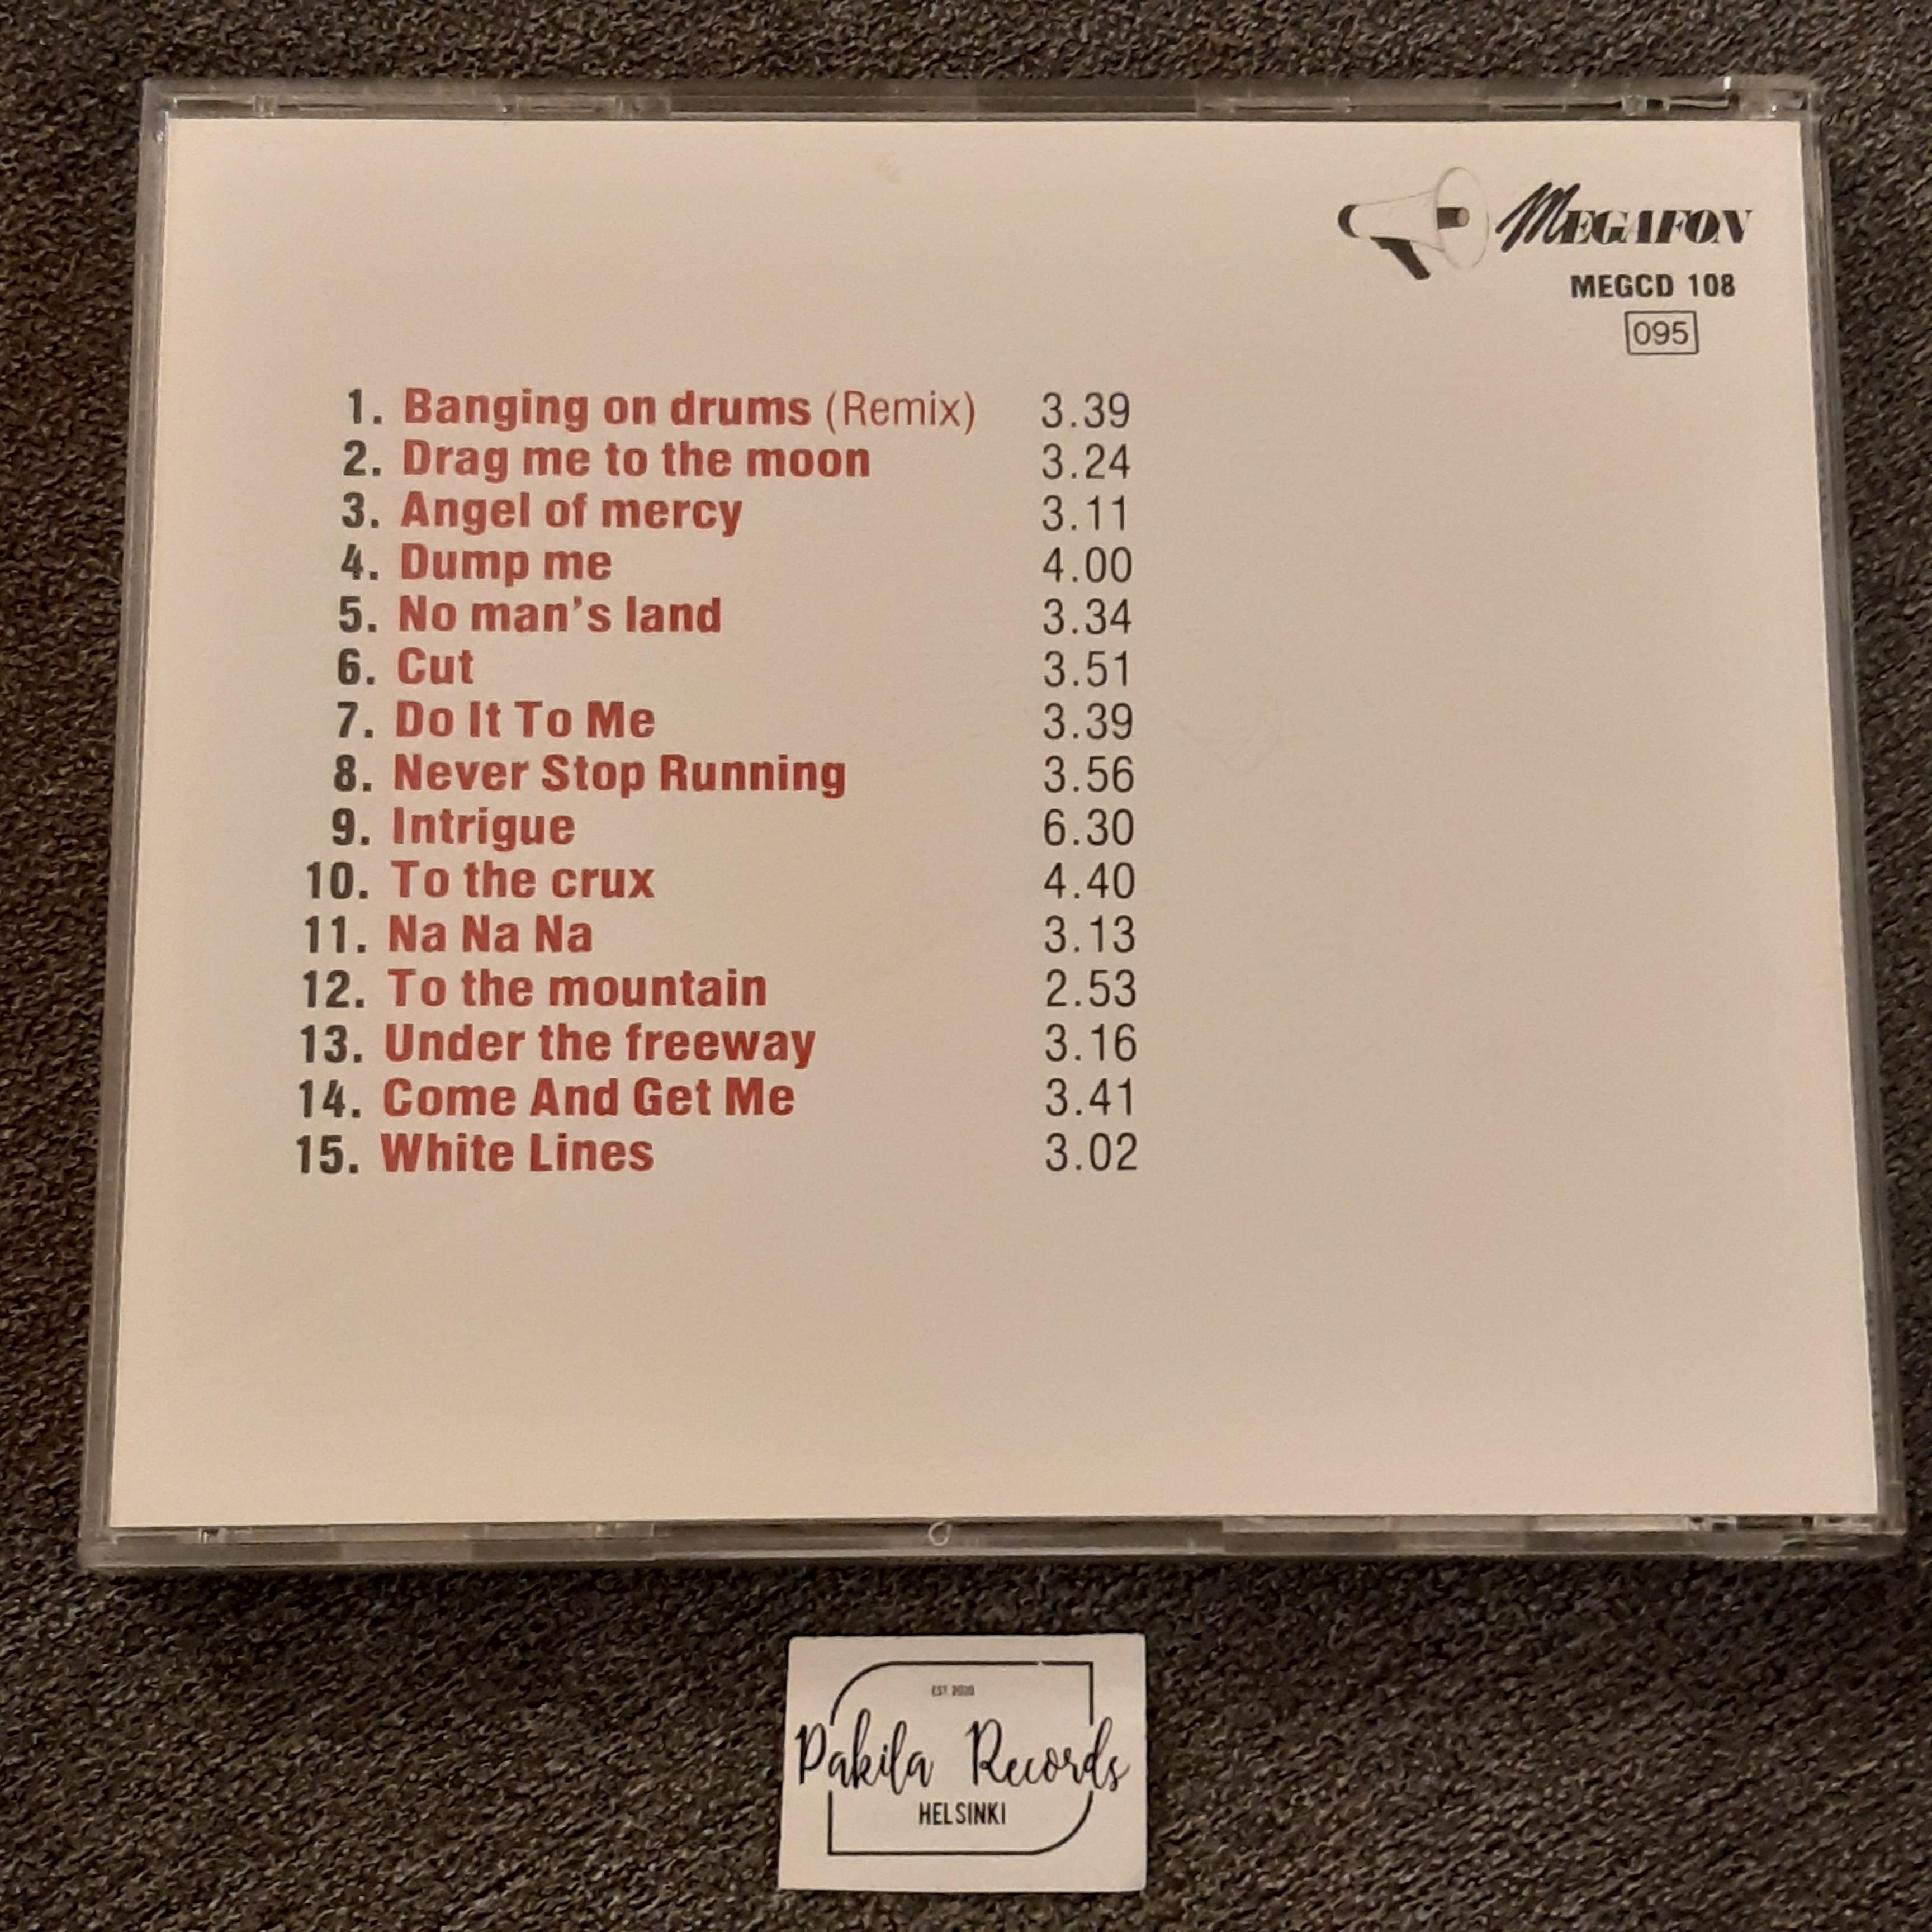 Zero Nine - 15 Greatest - CD (käytetty)